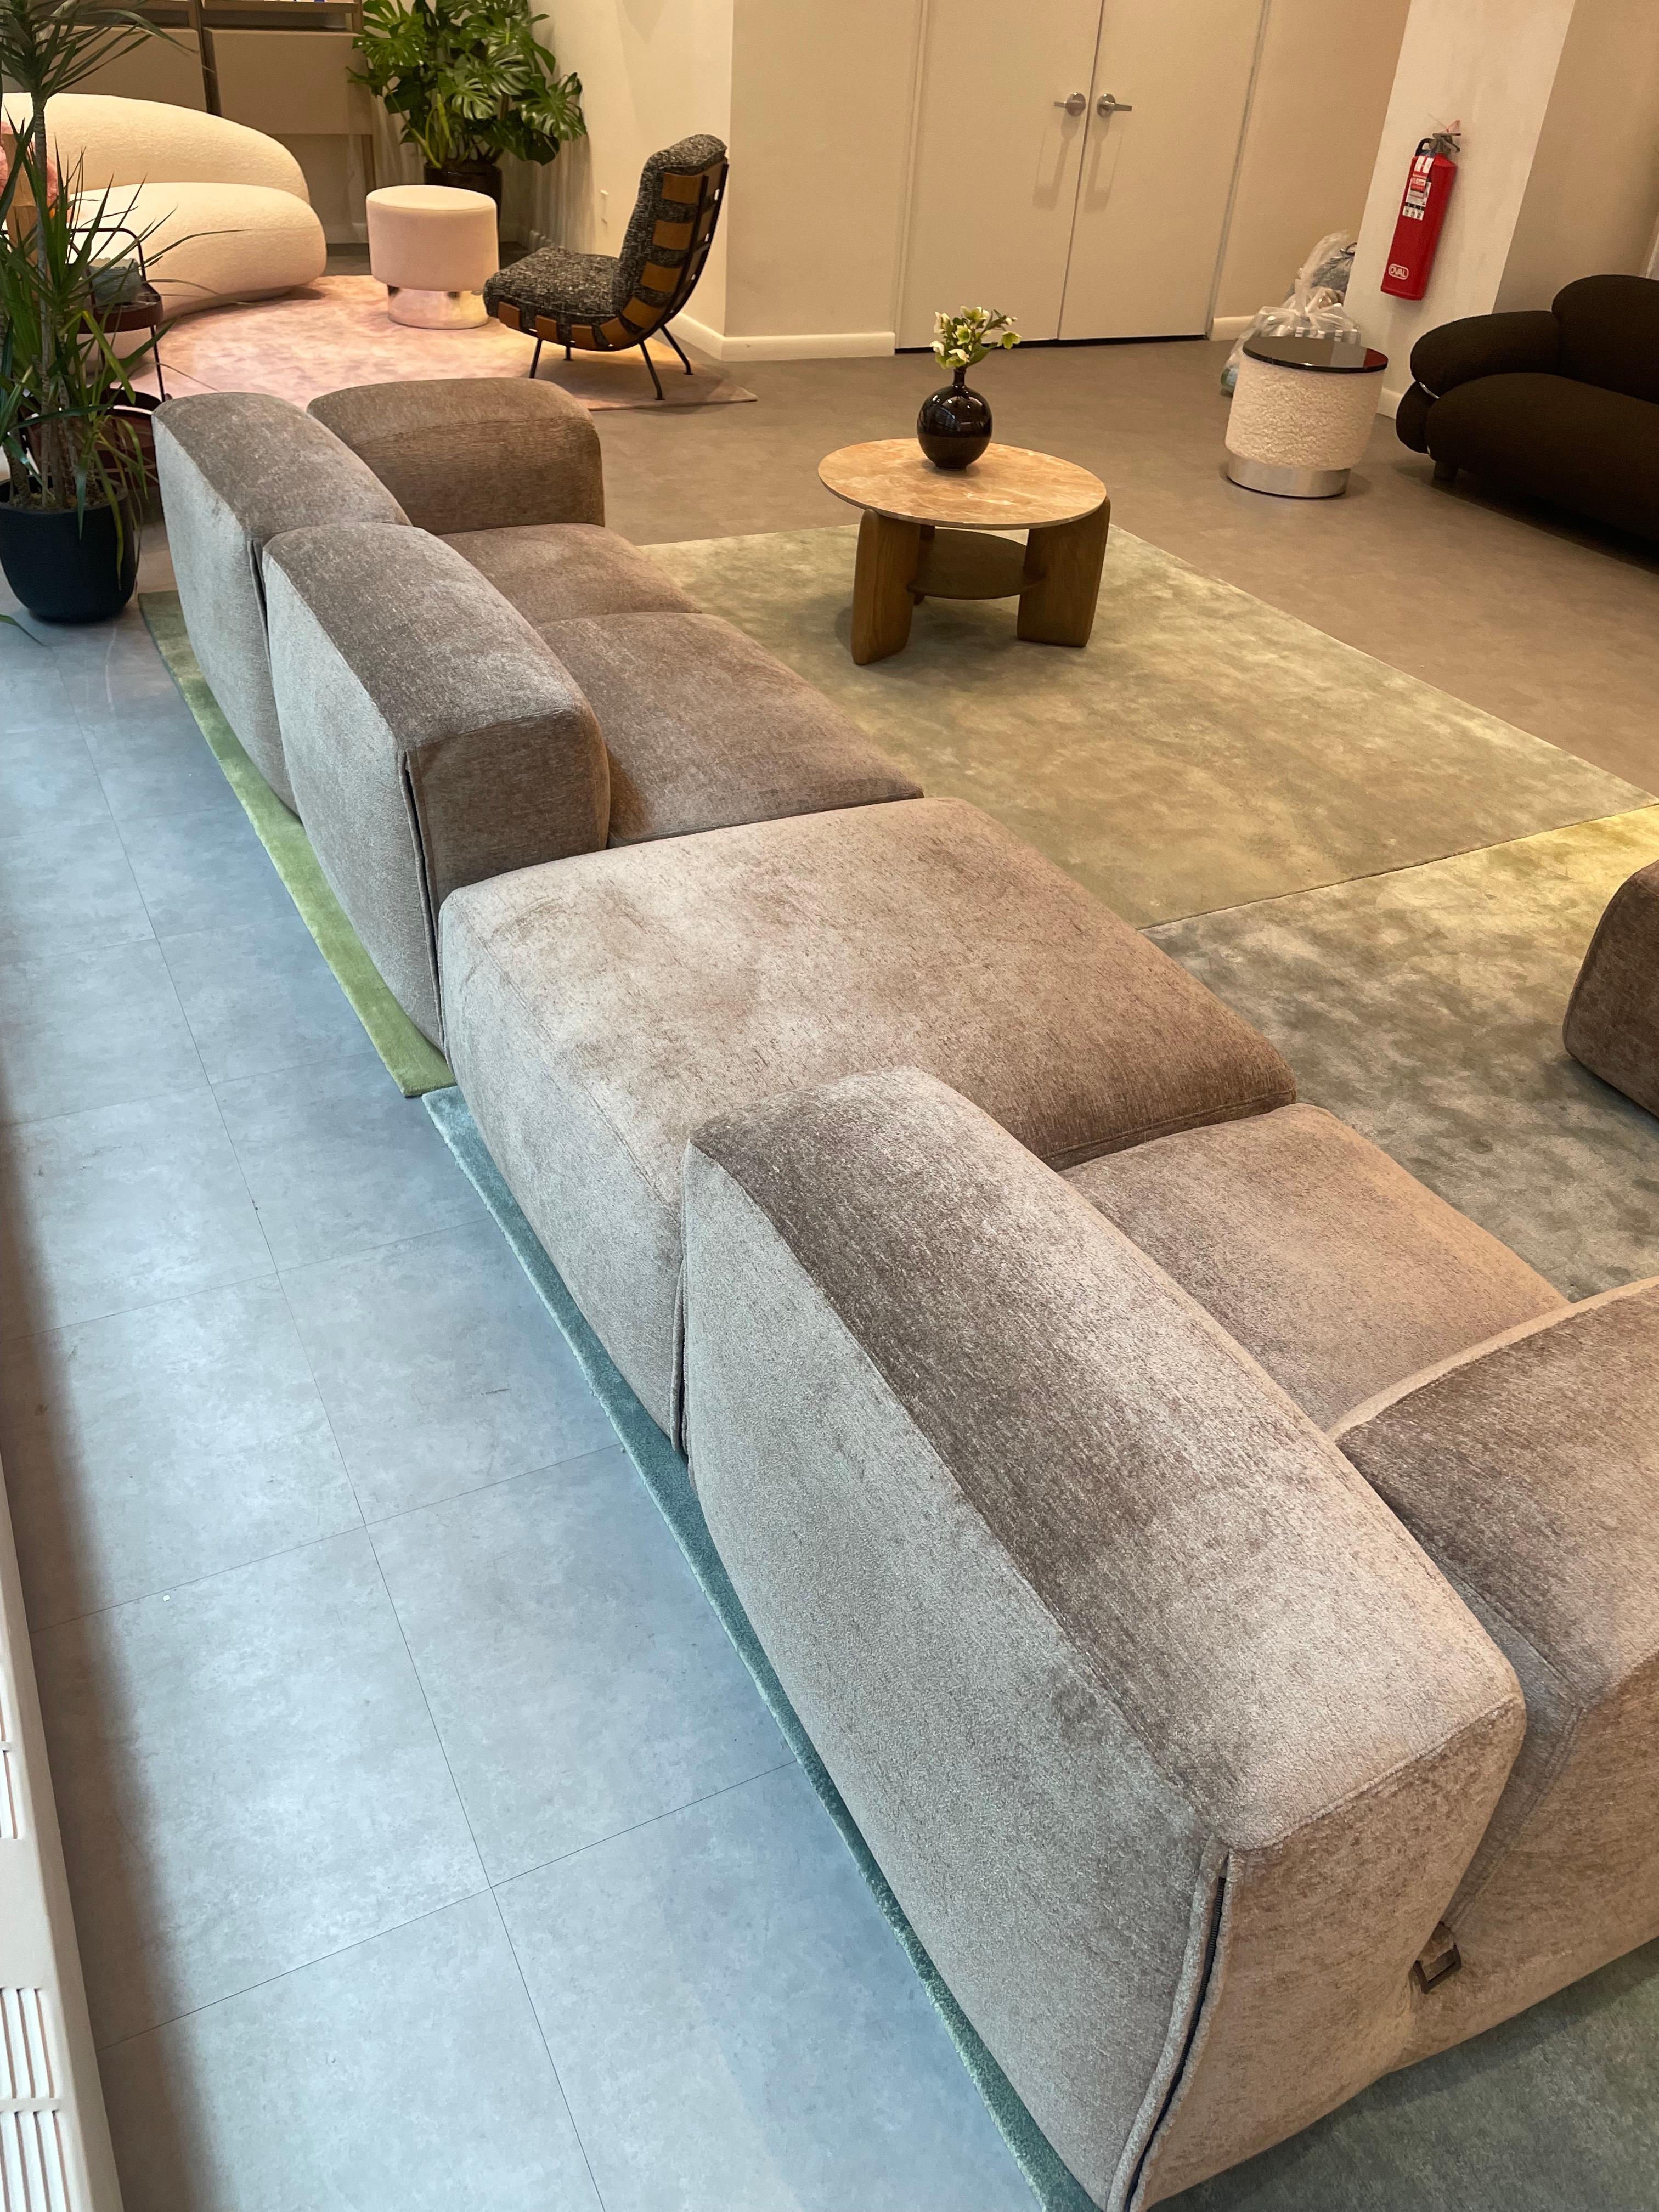 Contemporary  New Tacchini Le Mura Sofa Designed by Mario Bellini in STOCK